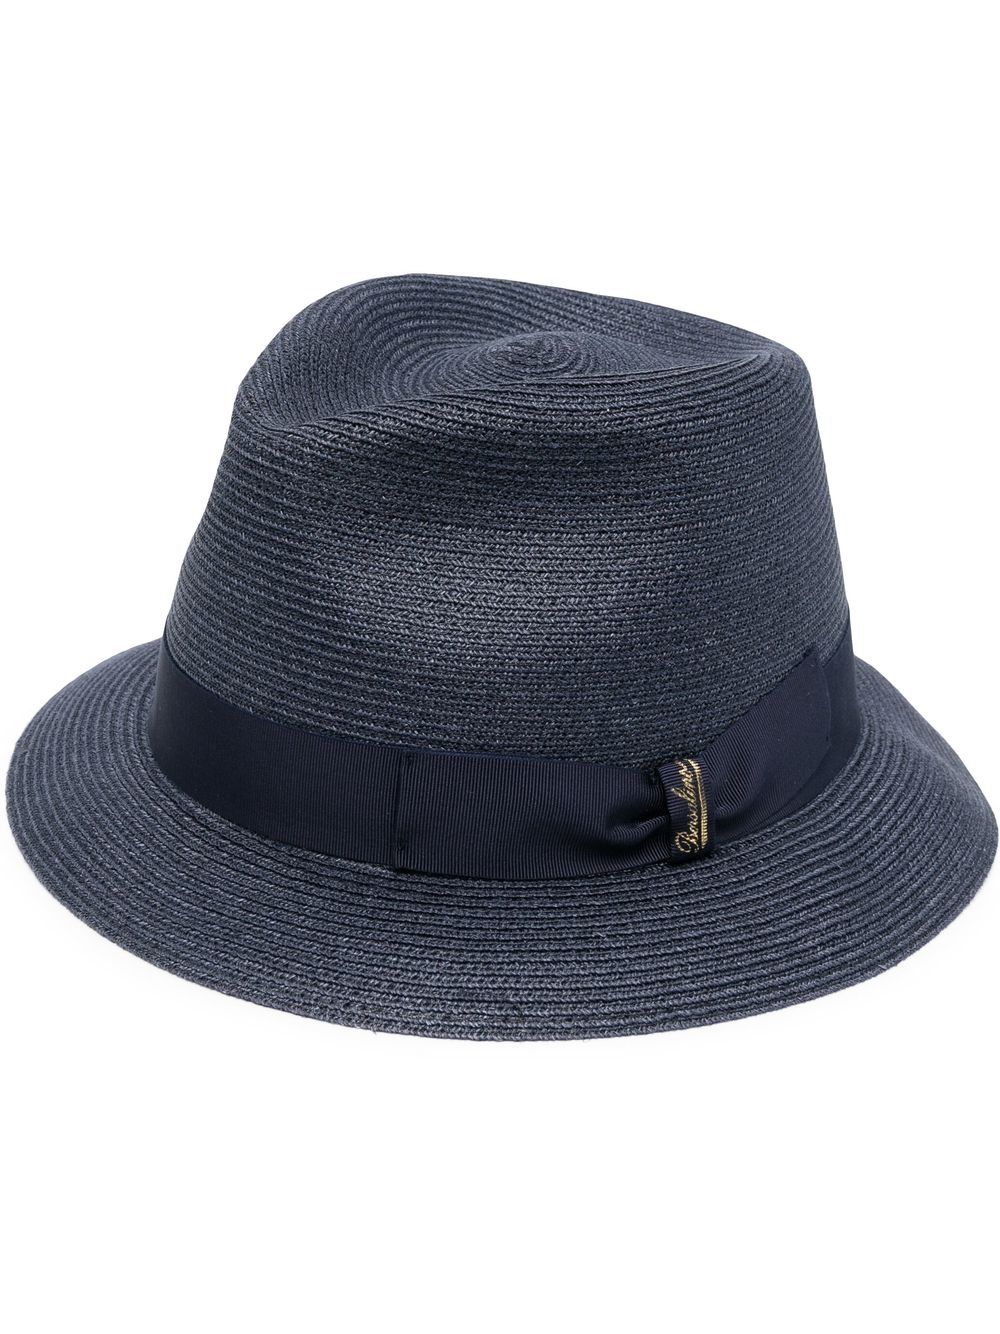 Borsalino woven hemp hat - Blue von Borsalino